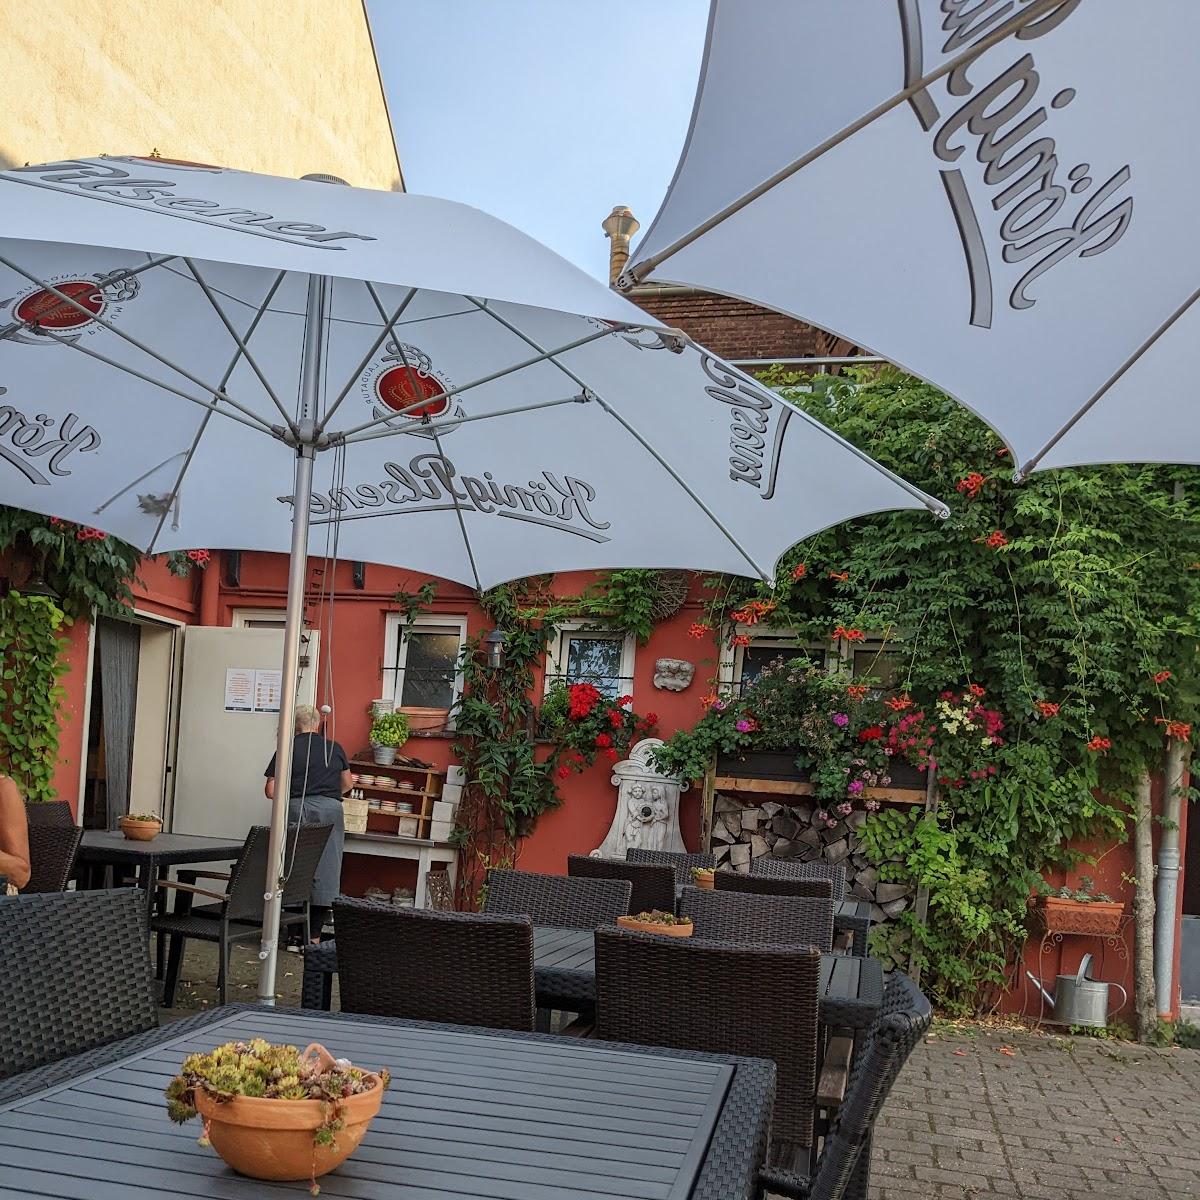 Restaurant "Restaurant Luft" in Oberhausen